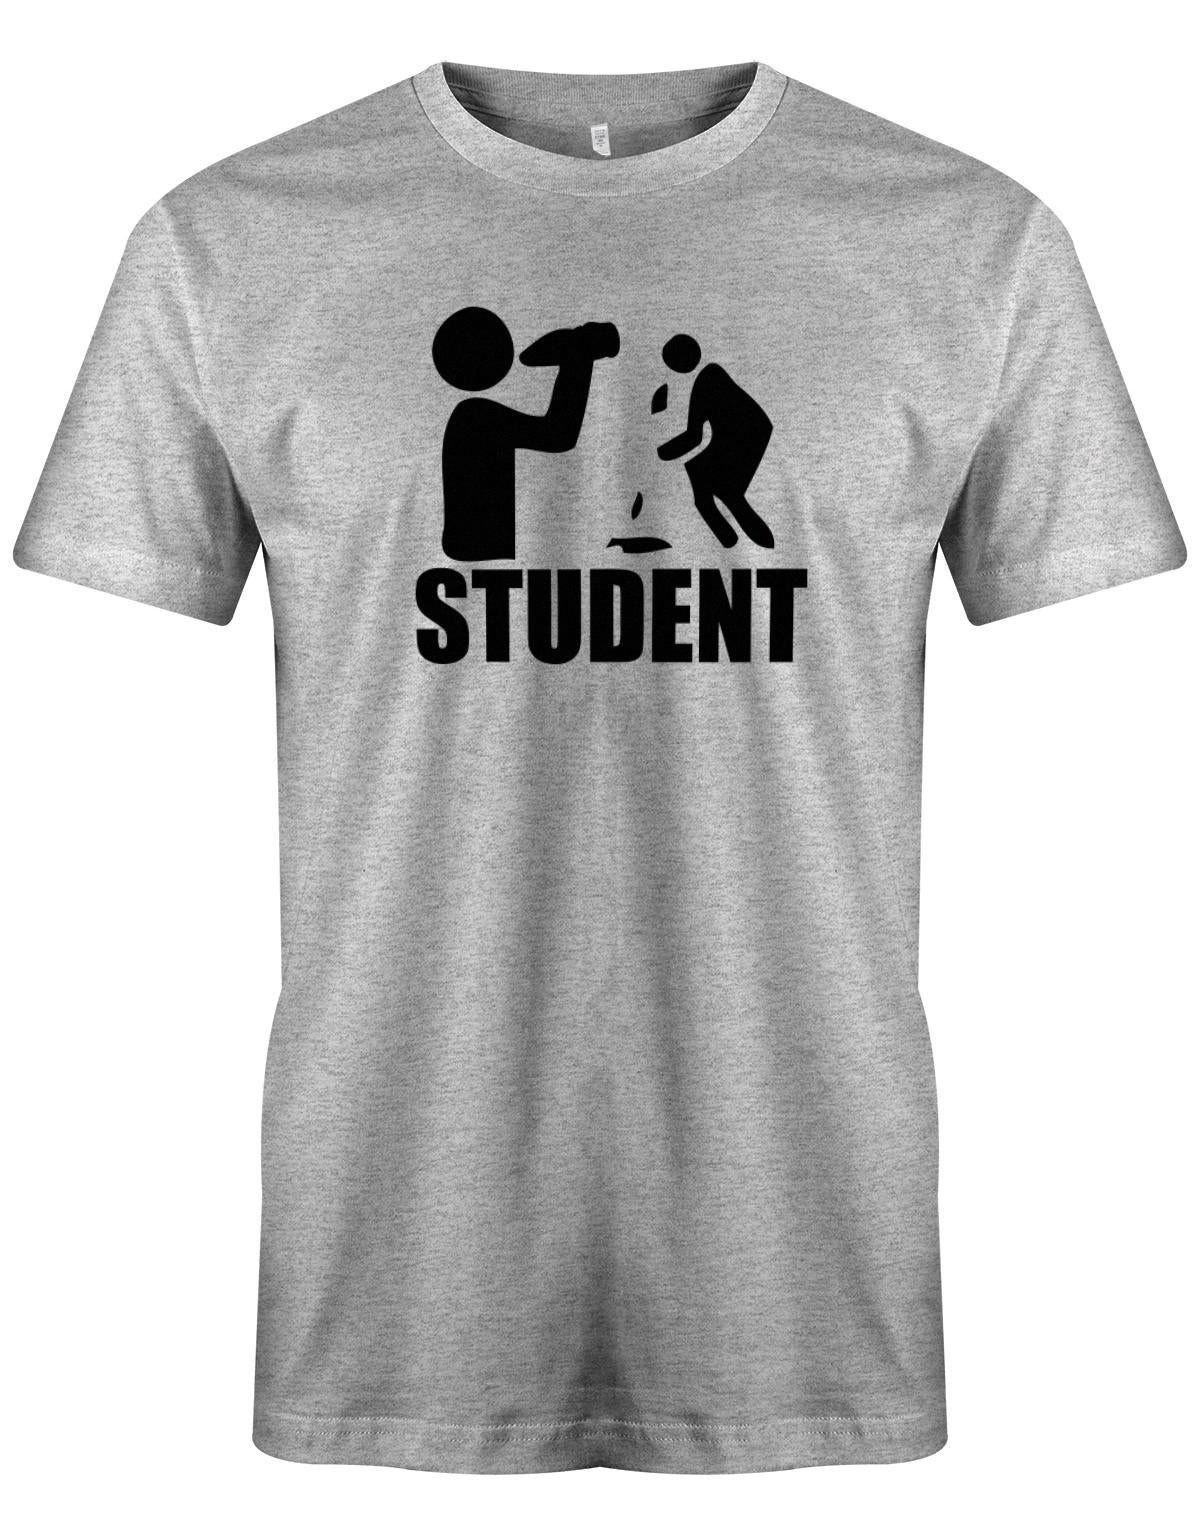 Student-Kotzen-Herren-Shirt-Grau